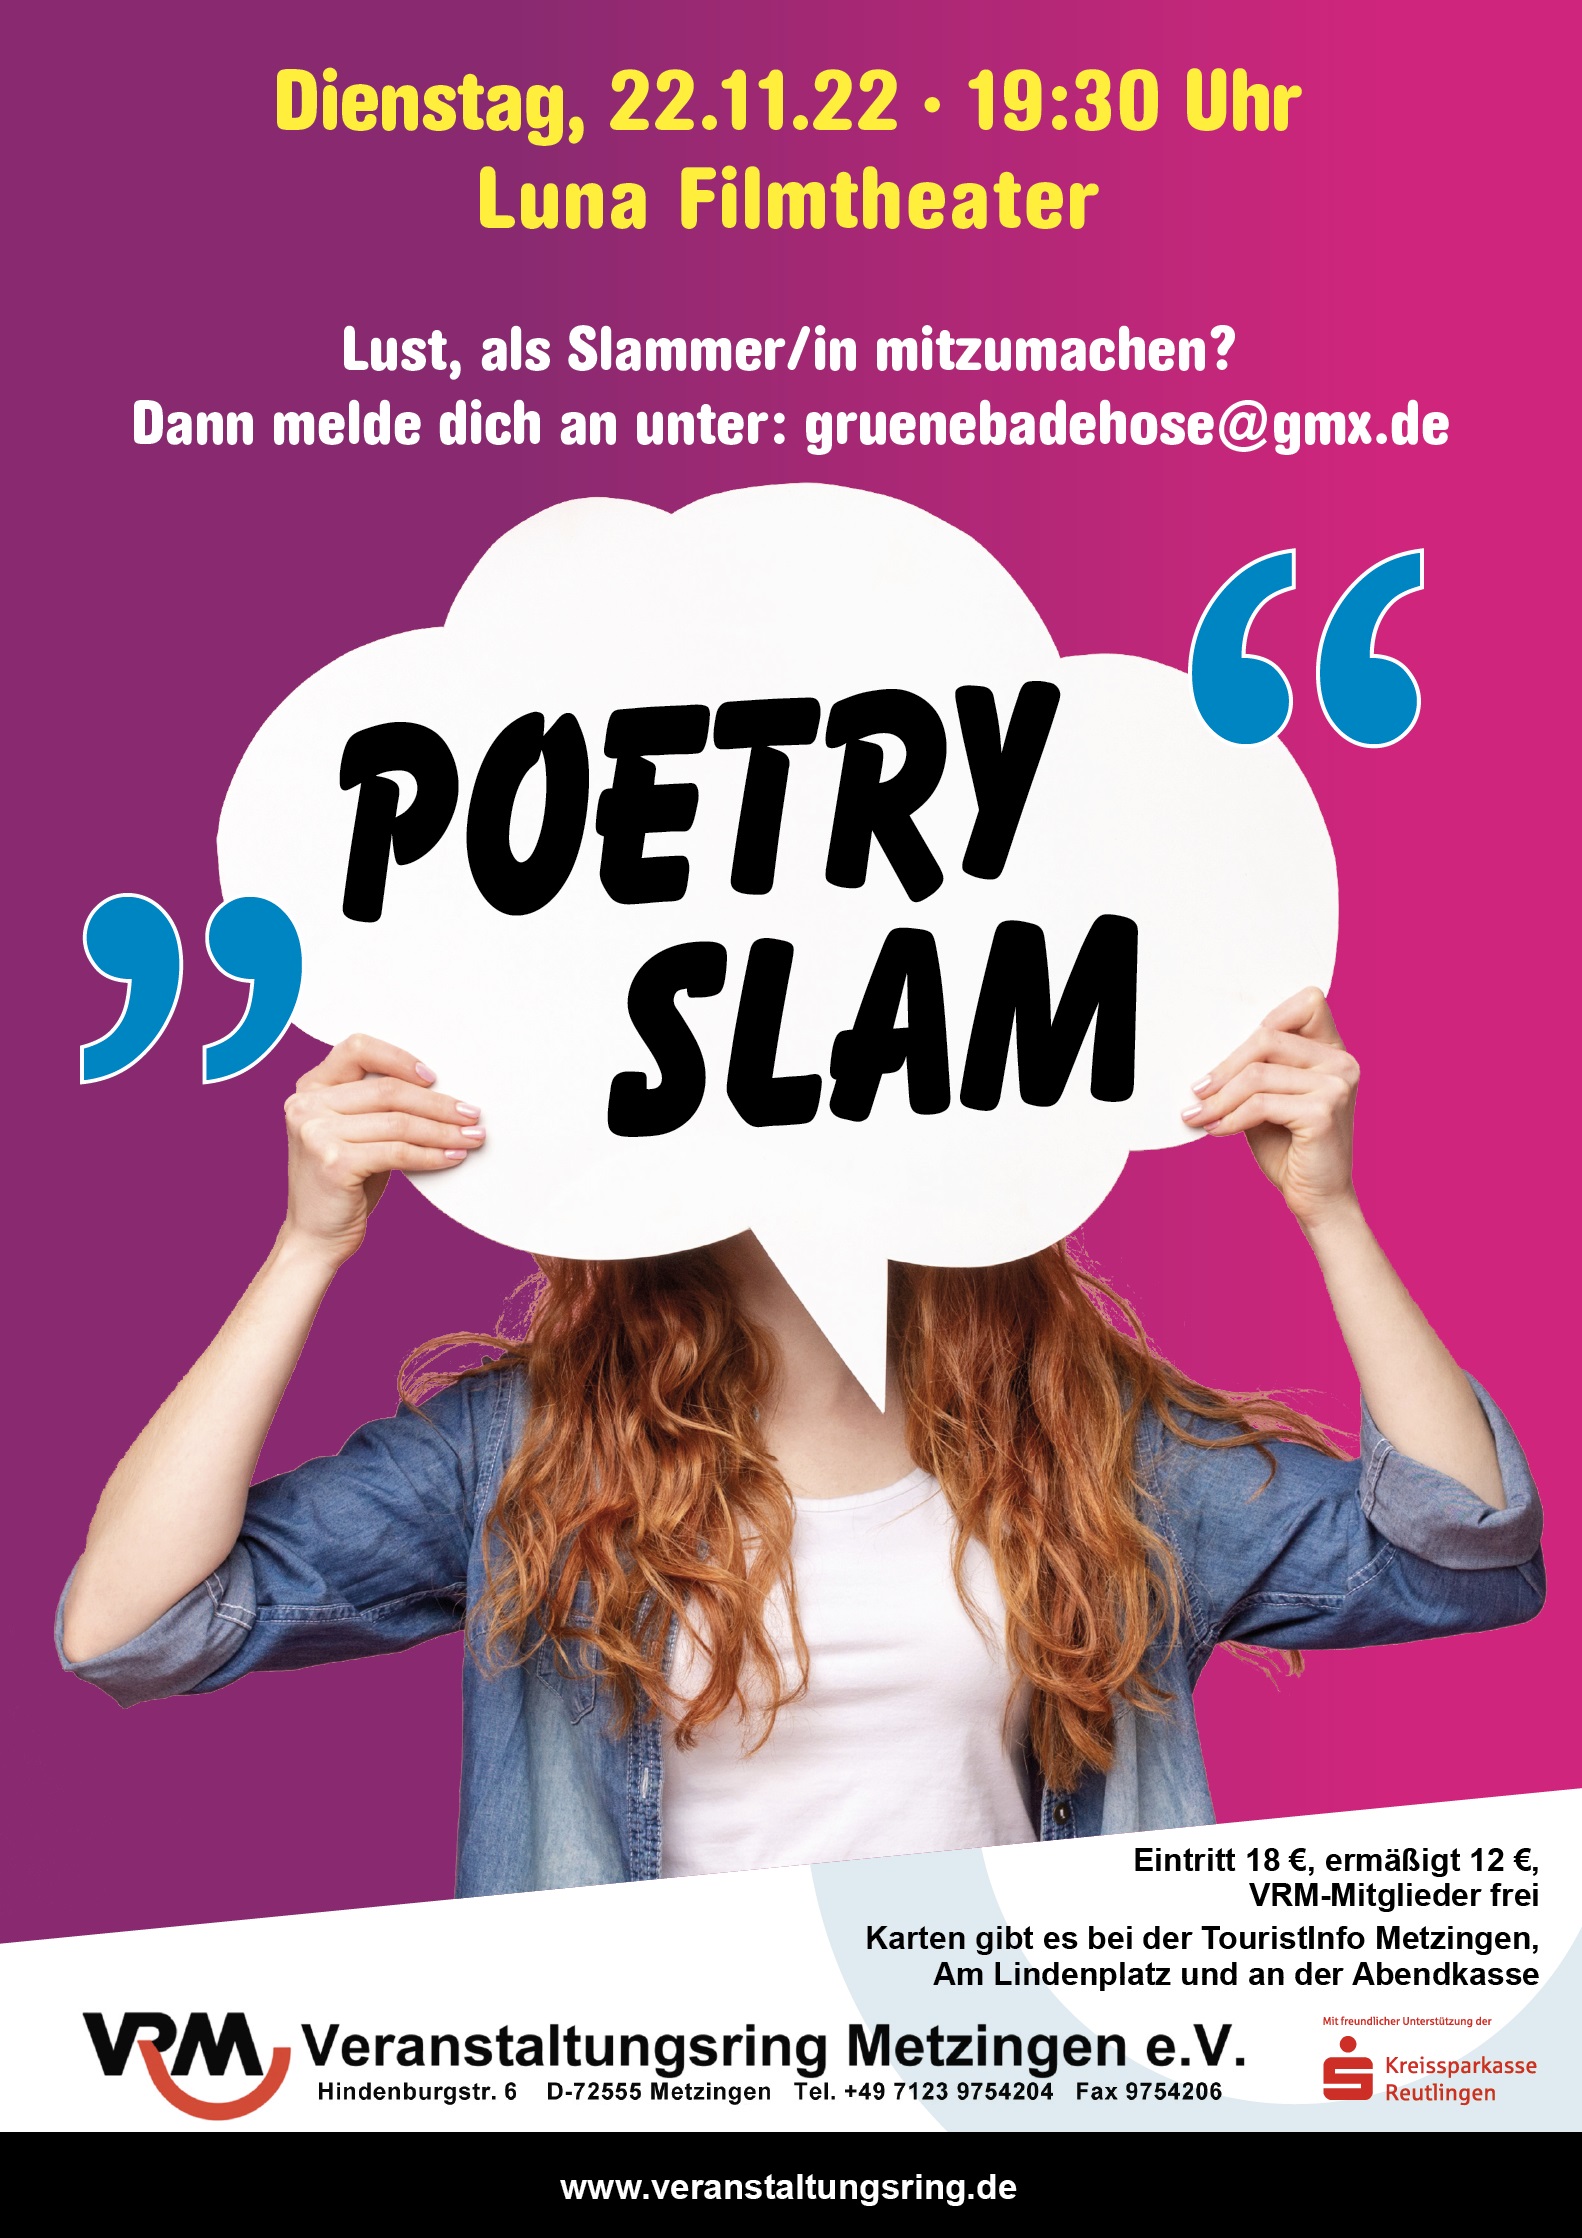 Walther slamt: 22.11.22 19:30 Uhr Luna Filmtheater – Poetry Slam des VRM Metzingen